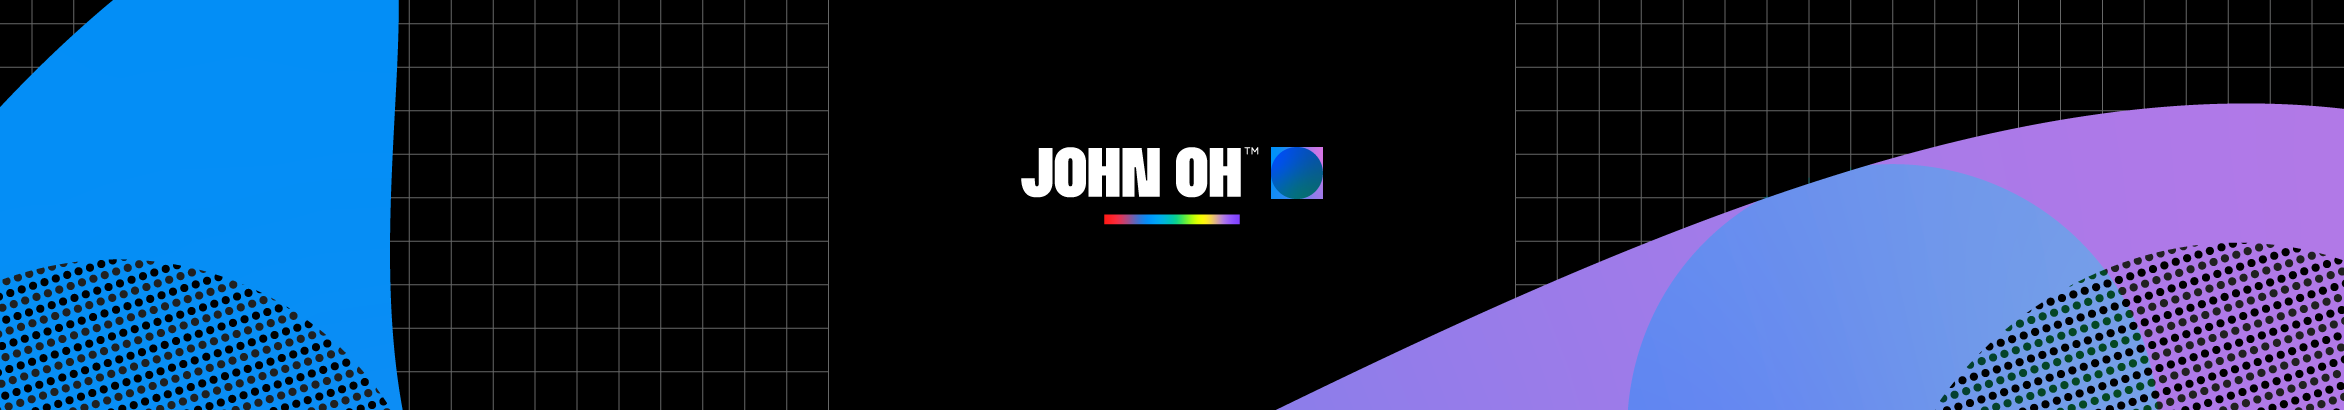 John Olivares's profile banner